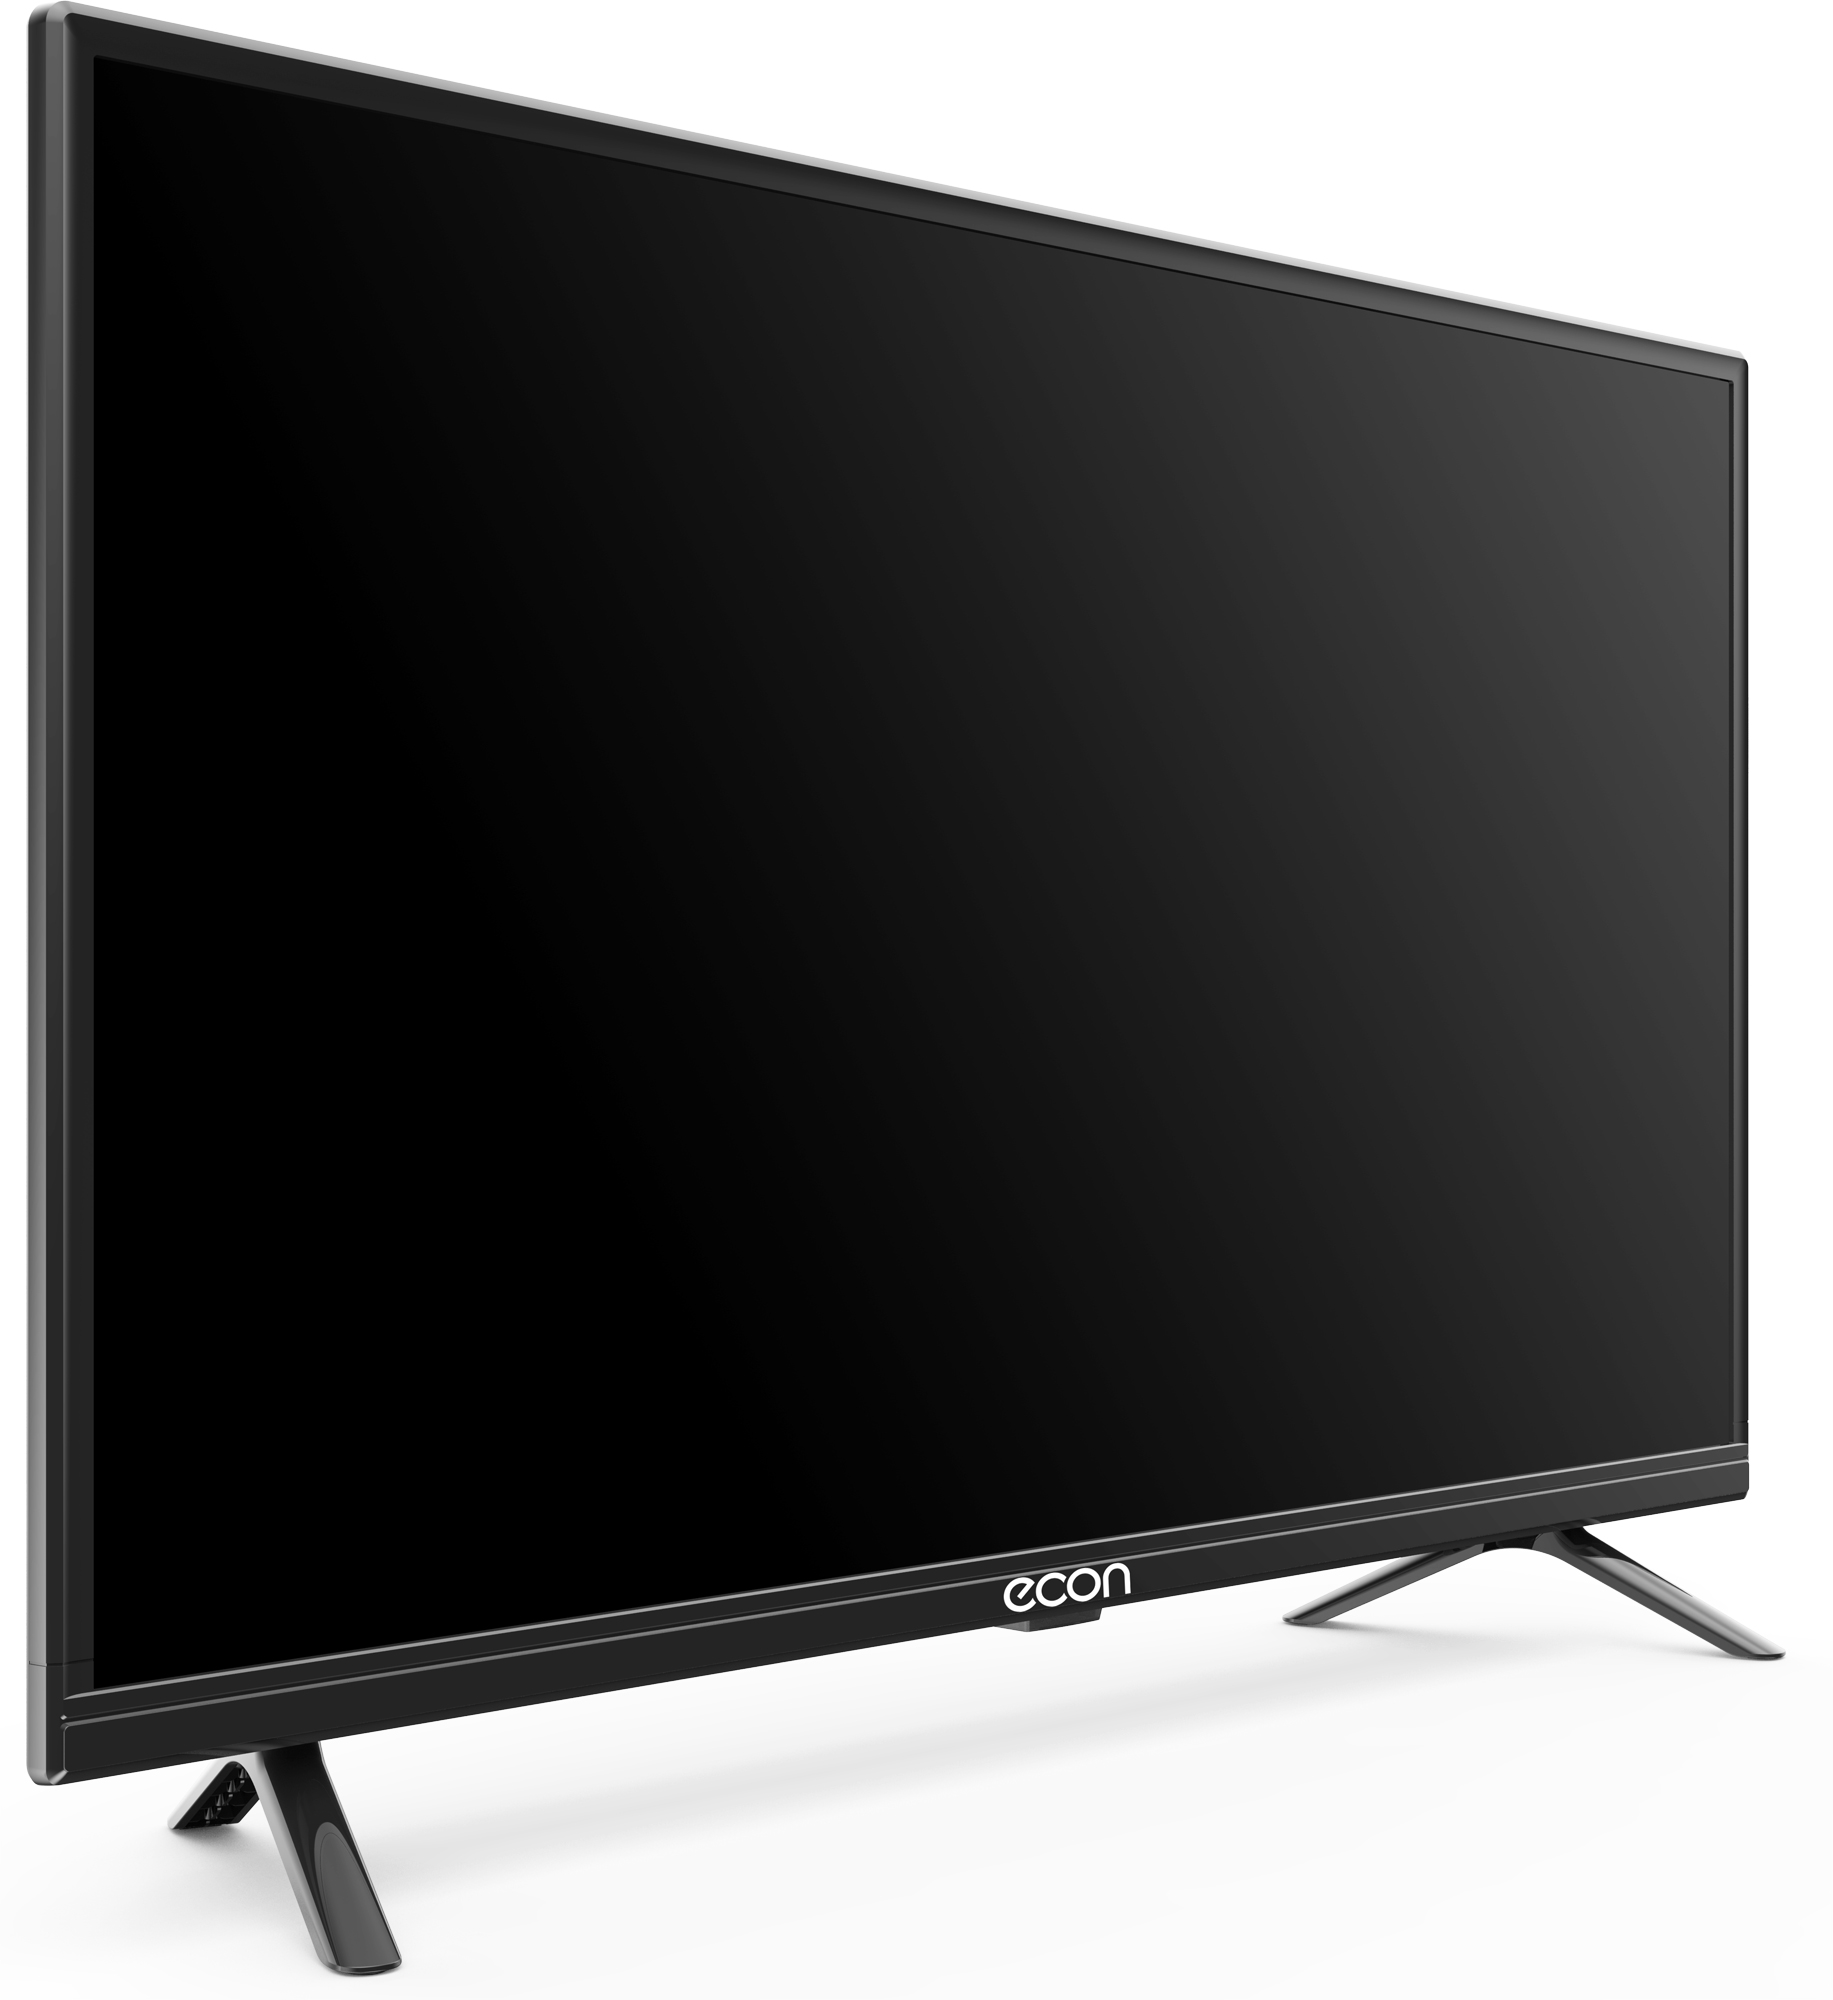 Картинка Smart телевизор ECON EX-32HS009B по разумной цене купить в интернет магазине mall.su